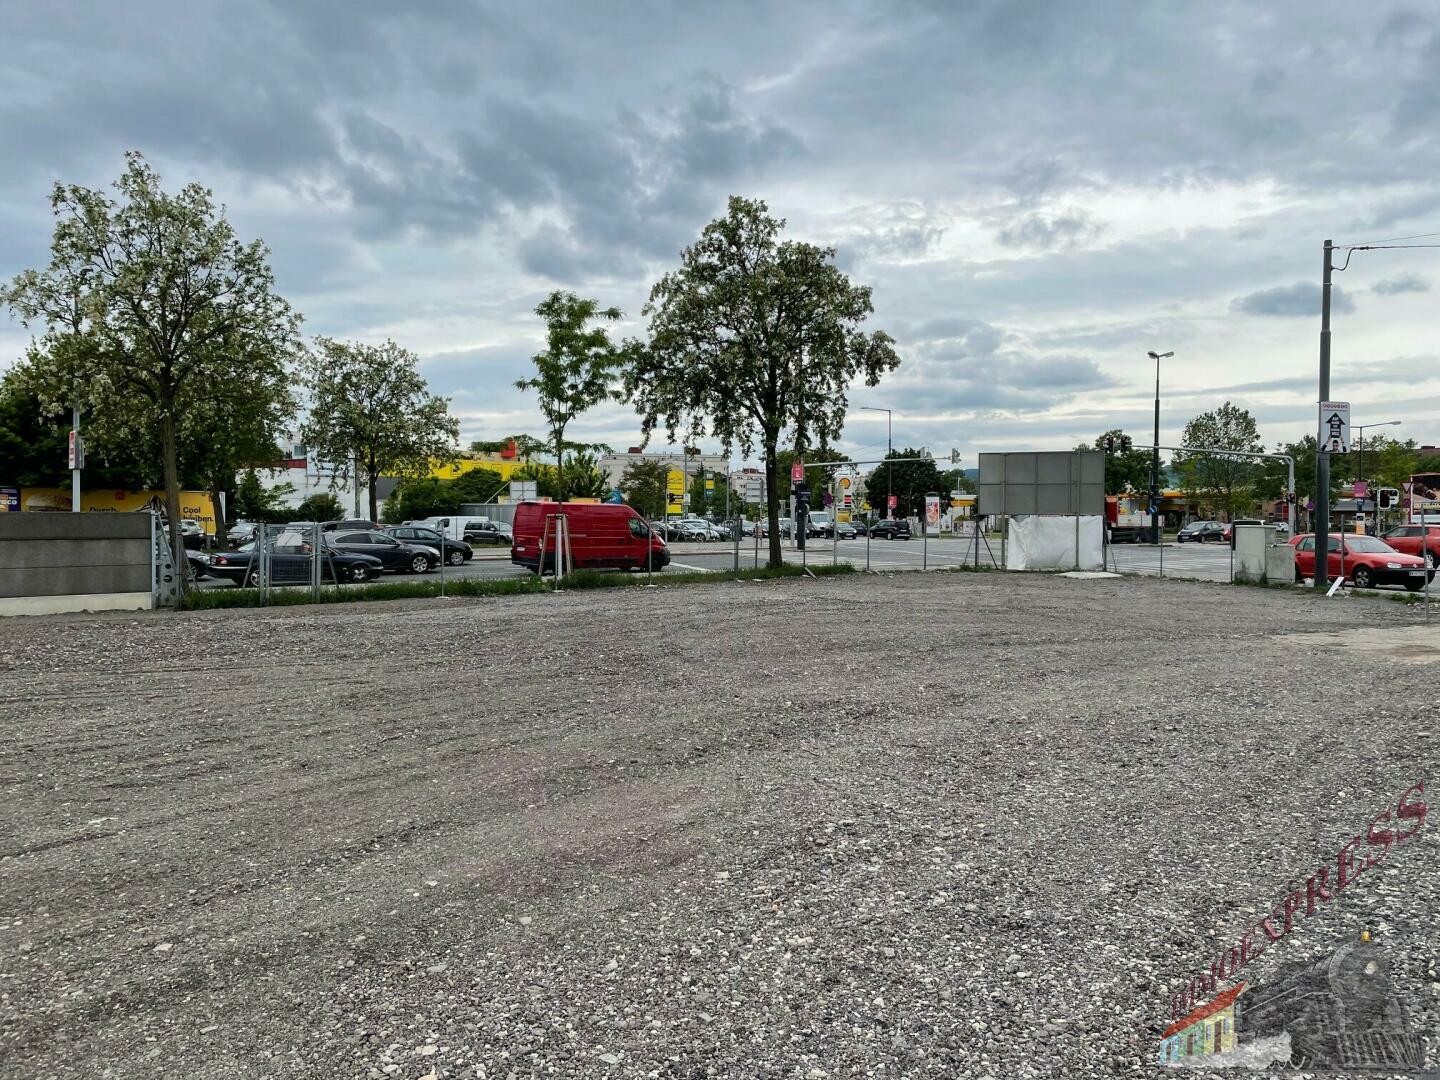 Top Autoplatz 800 m², Gewerbeobjekt in ausgezeichneter Lage Leopoldauer Straße 48-52, 1210 Wien.